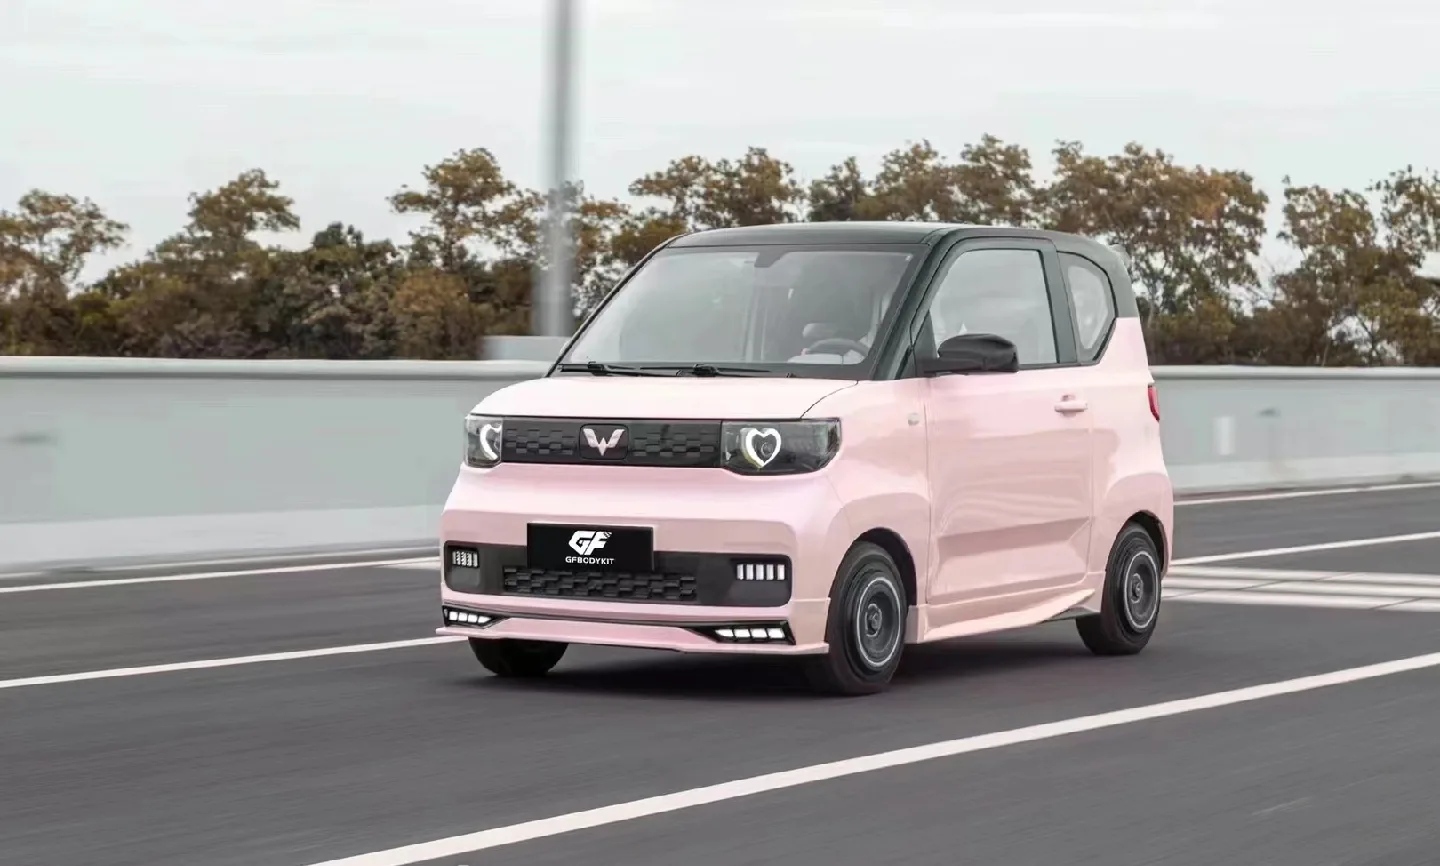 五菱宏光miniev是上汽通用五菱旗下五菱品牌的首款四座新能源车,于